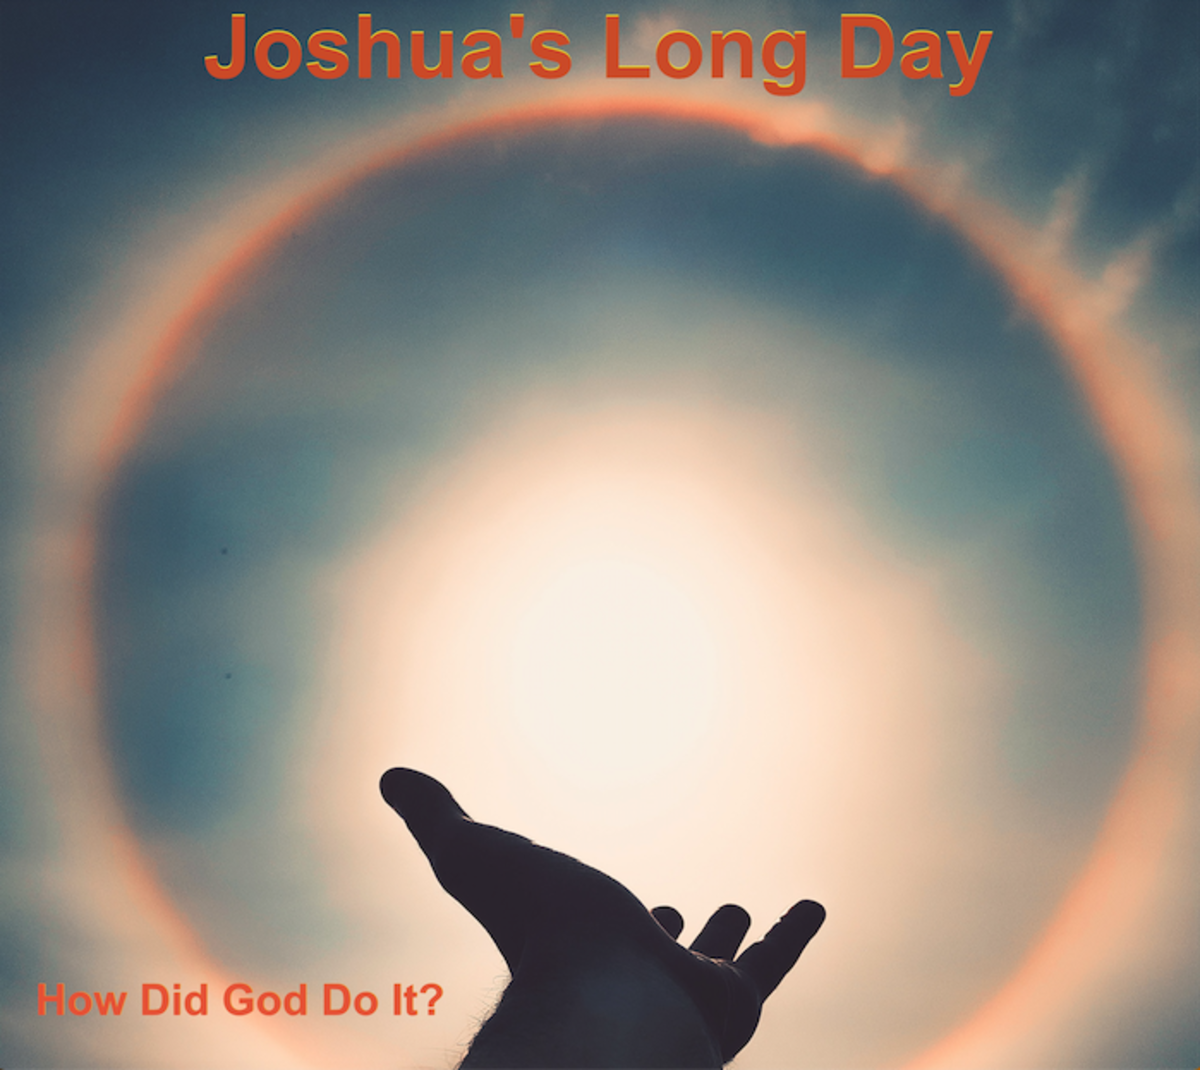 Joshua’s Long Day vs 20th Century Science